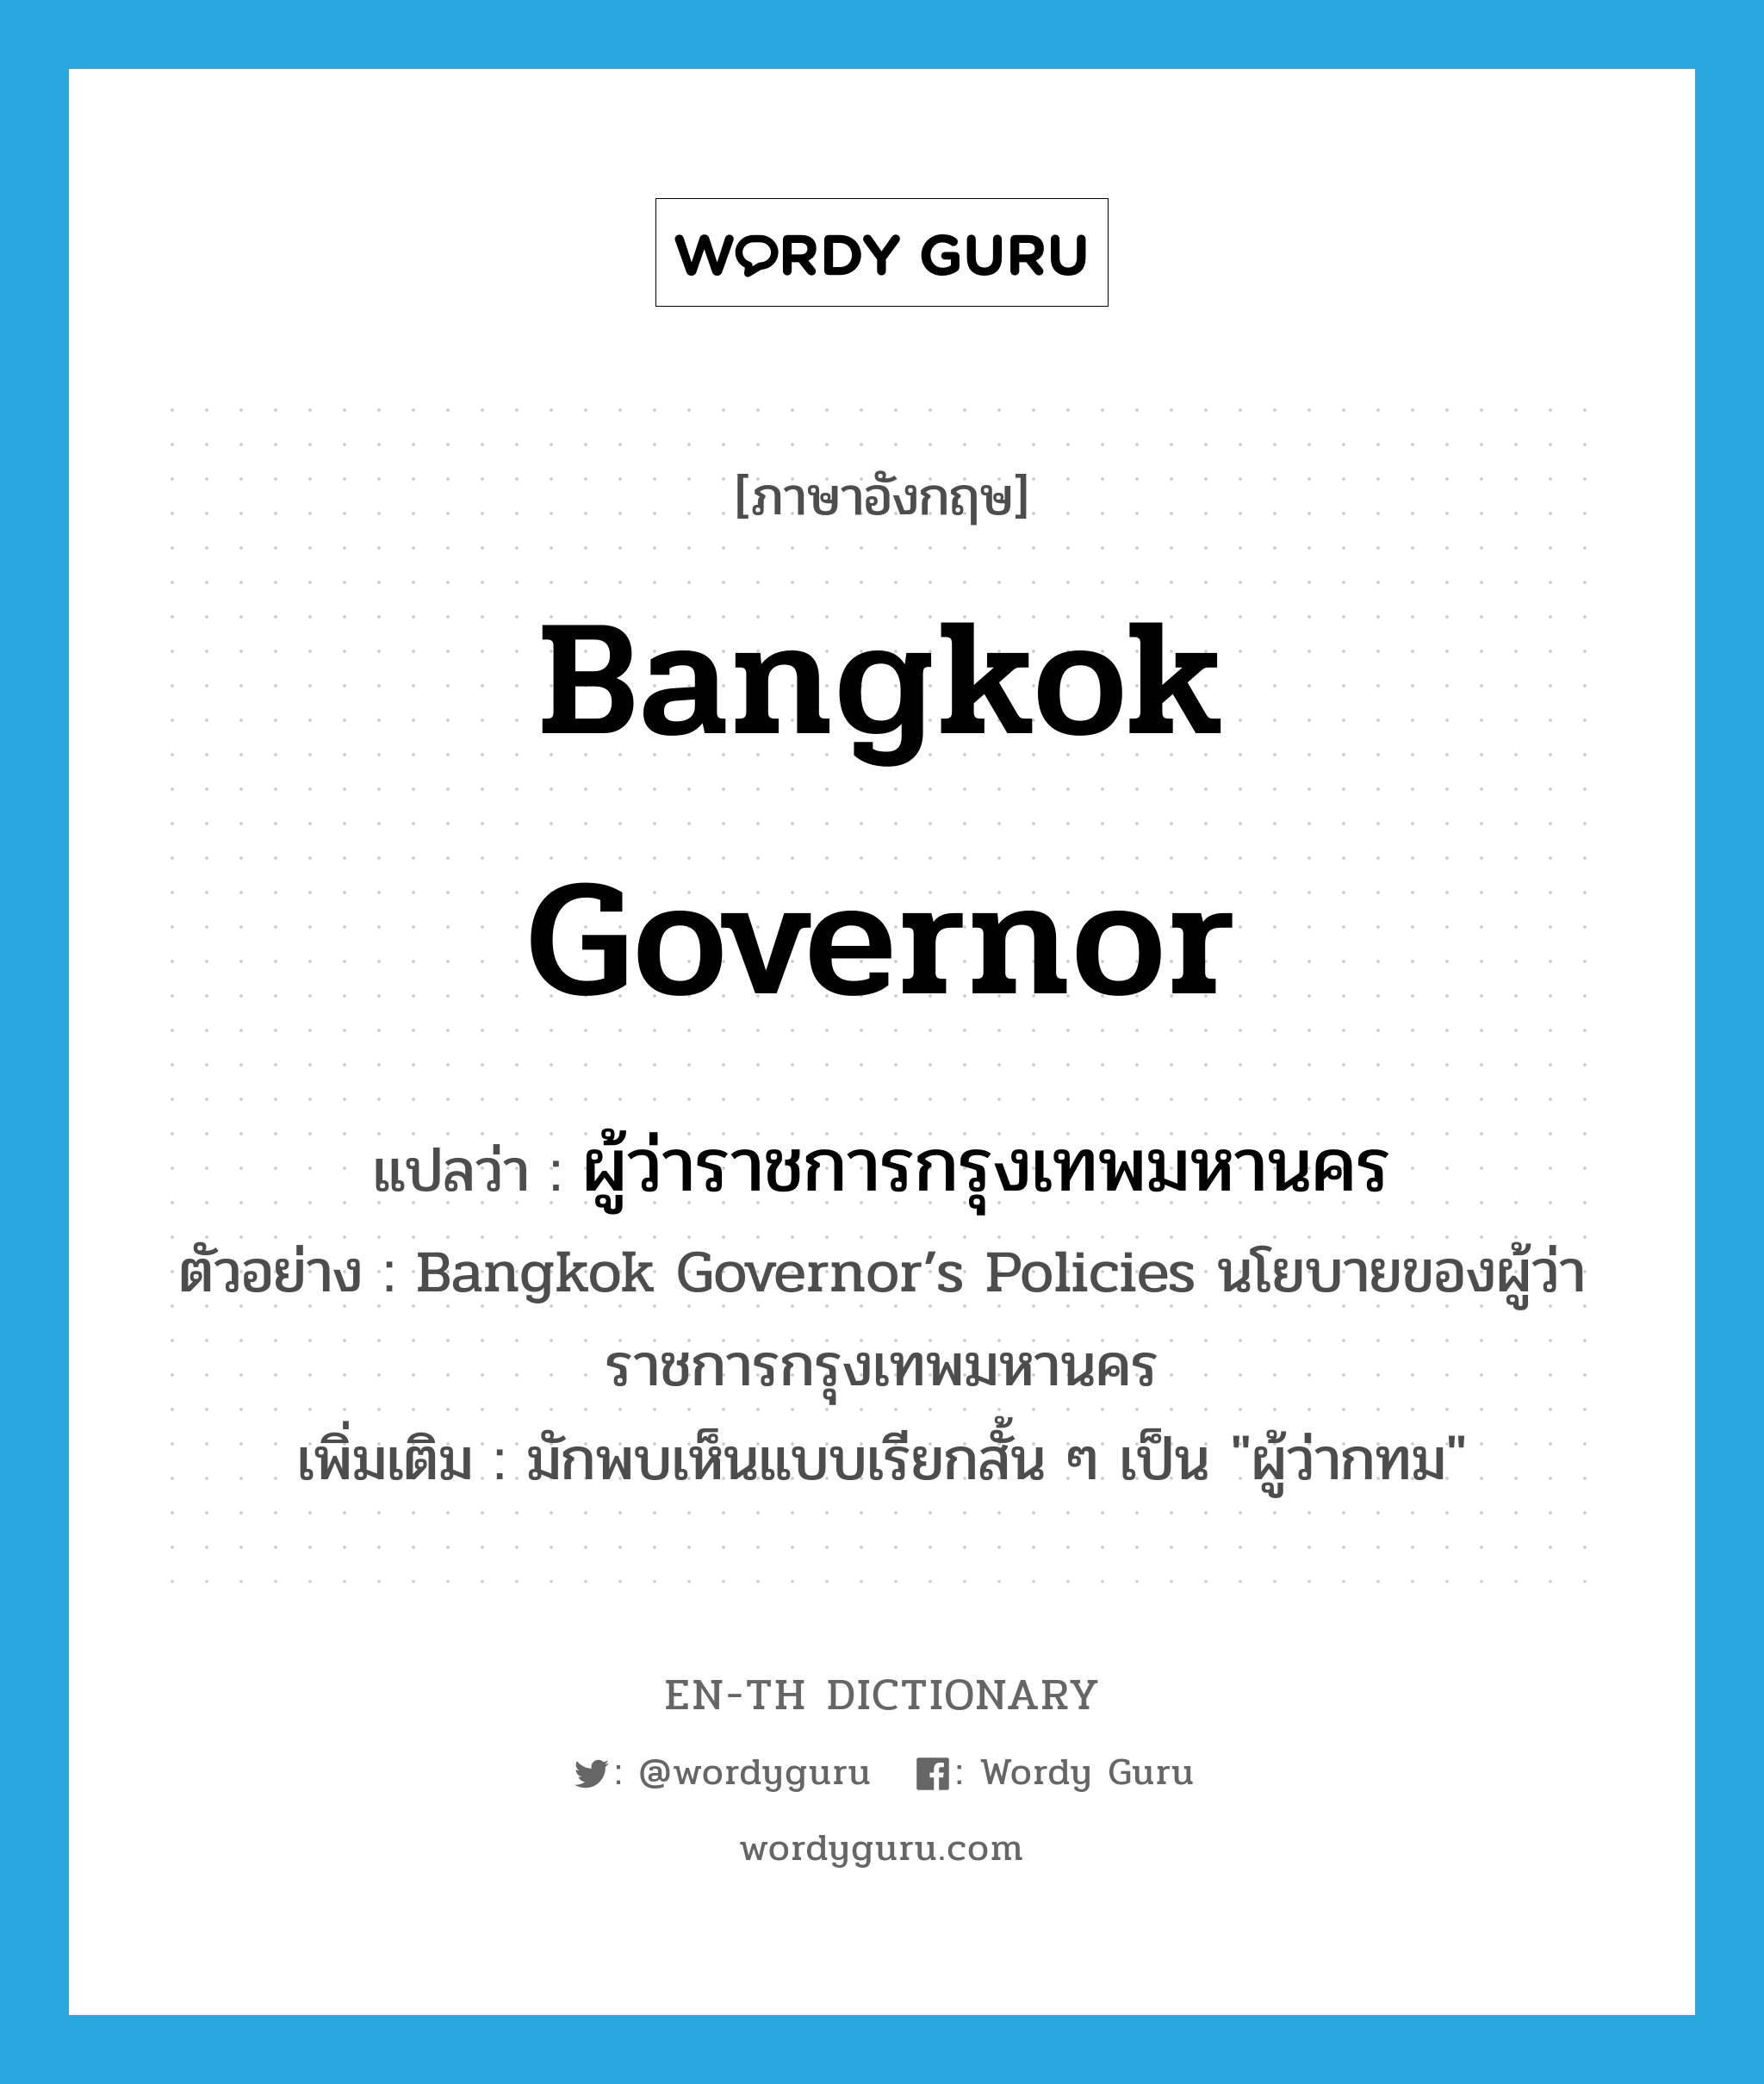 ผู้ว่าราชการกรุงเทพมหานคร ภาษาอังกฤษ?, คำศัพท์ภาษาอังกฤษ ผู้ว่าราชการกรุงเทพมหานคร แปลว่า Bangkok governor ประเภท N ตัวอย่าง Bangkok Governor’s Policies นโยบายของผู้ว่าราชการกรุงเทพมหานคร เพิ่มเติม มักพบเห็นแบบเรียกสั้น ๆ เป็น "ผู้ว่ากทม" หมวด N